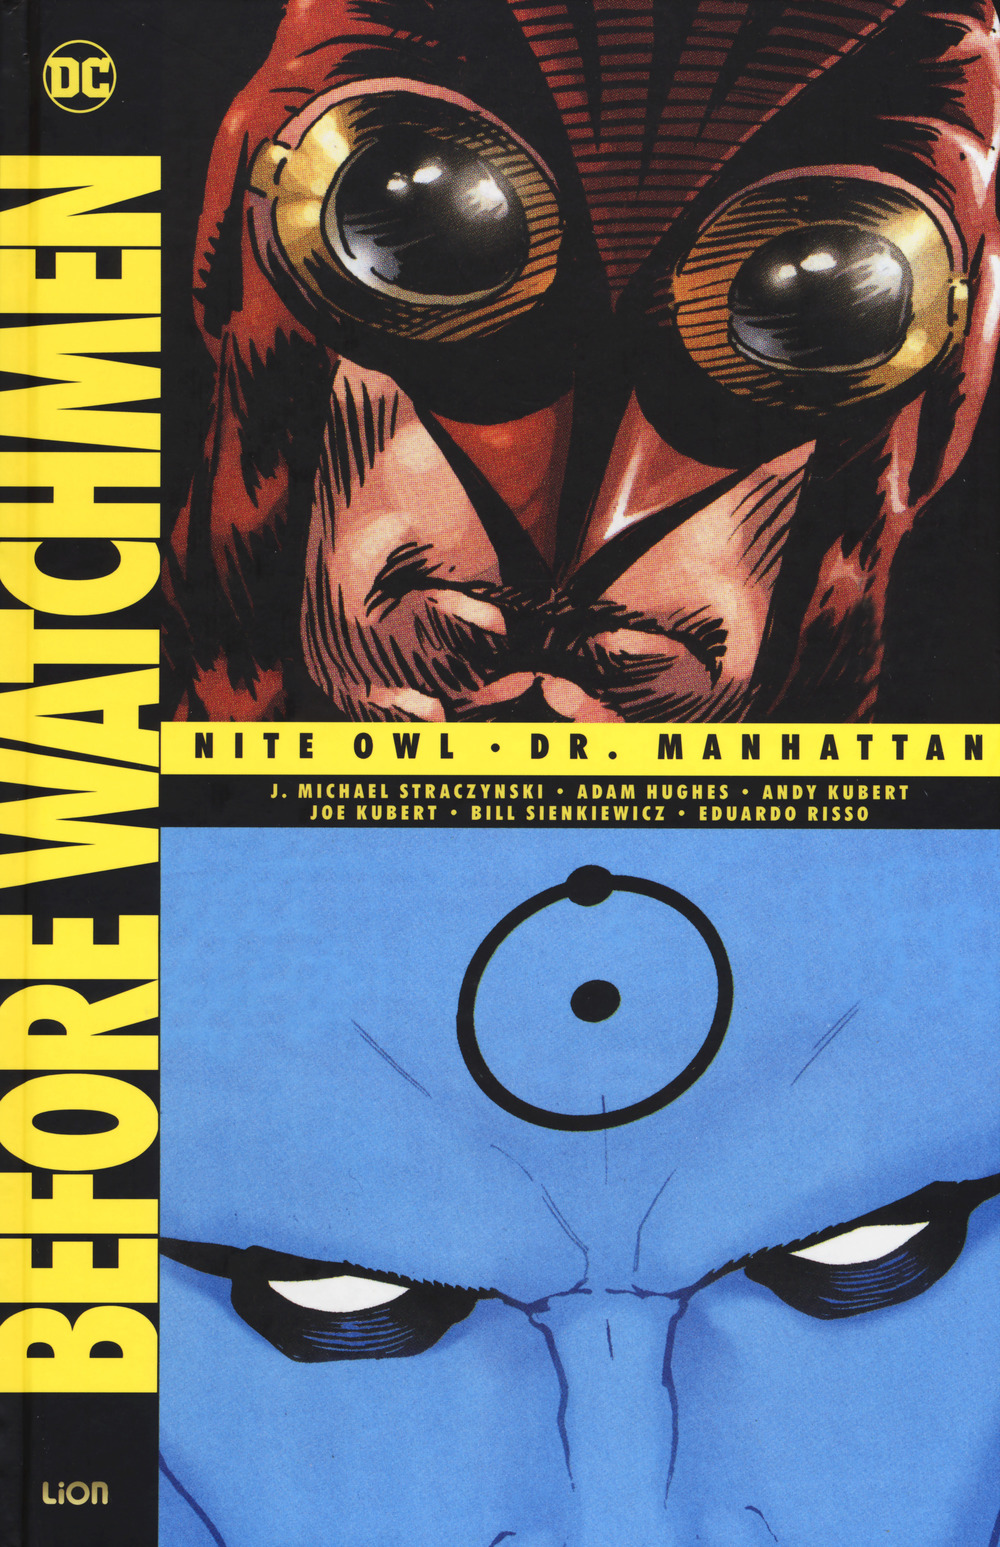 Before Watchmen: Nite owl-Dr. Manhattan. Vol. 1